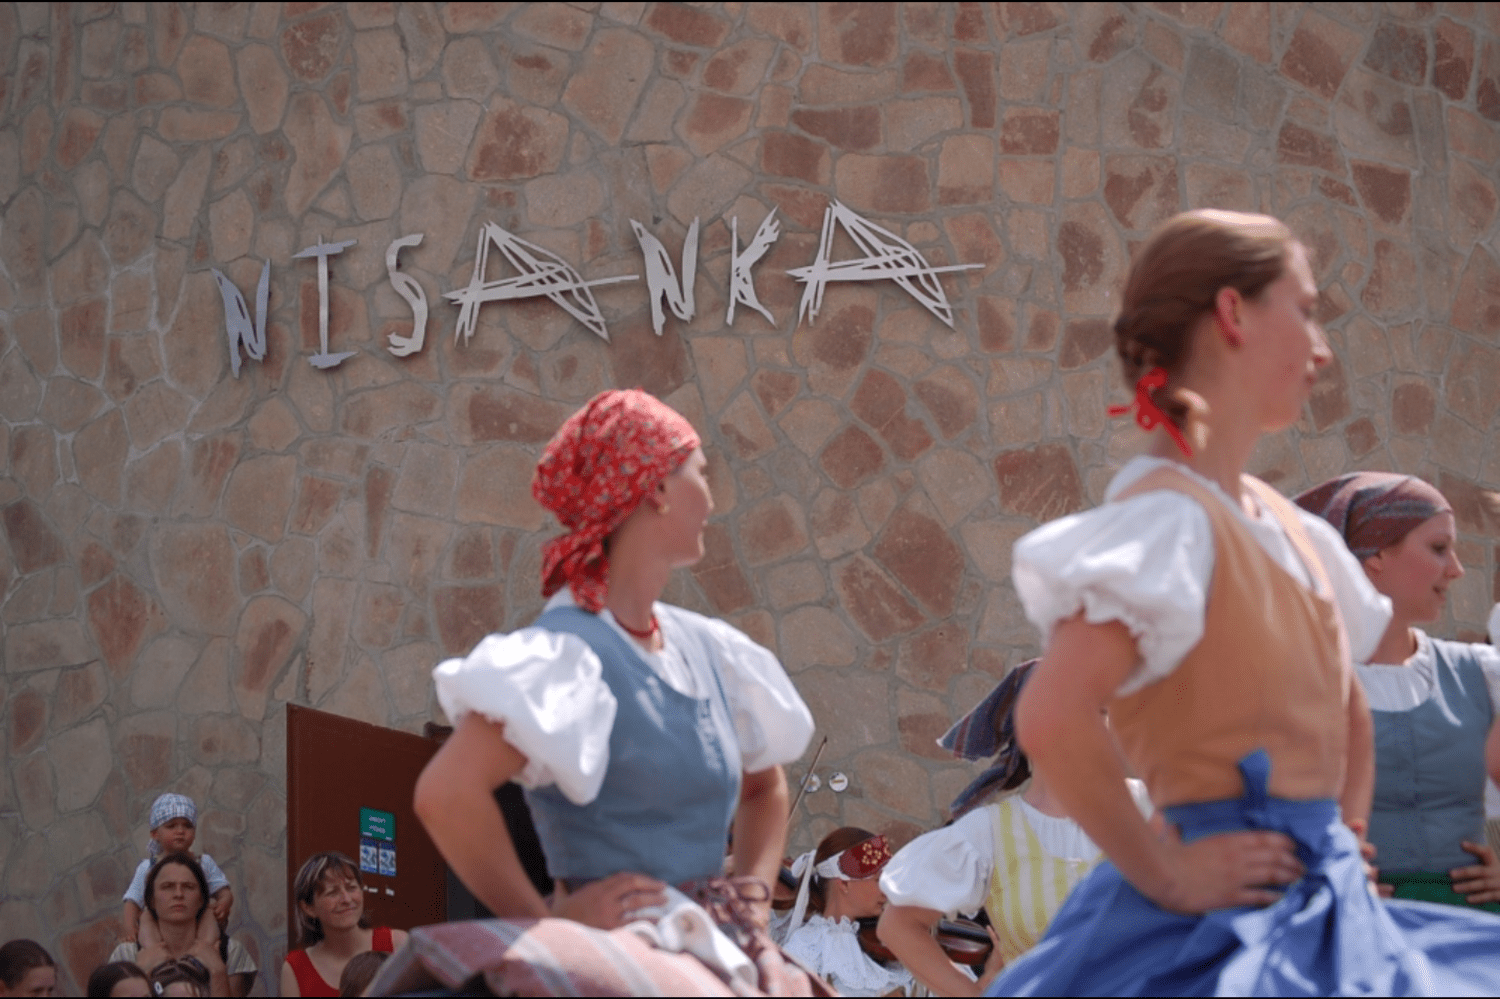 Folklórní soubor Nisanka tančící v krojích u stejnojmenné rozhledny - Jablonecko